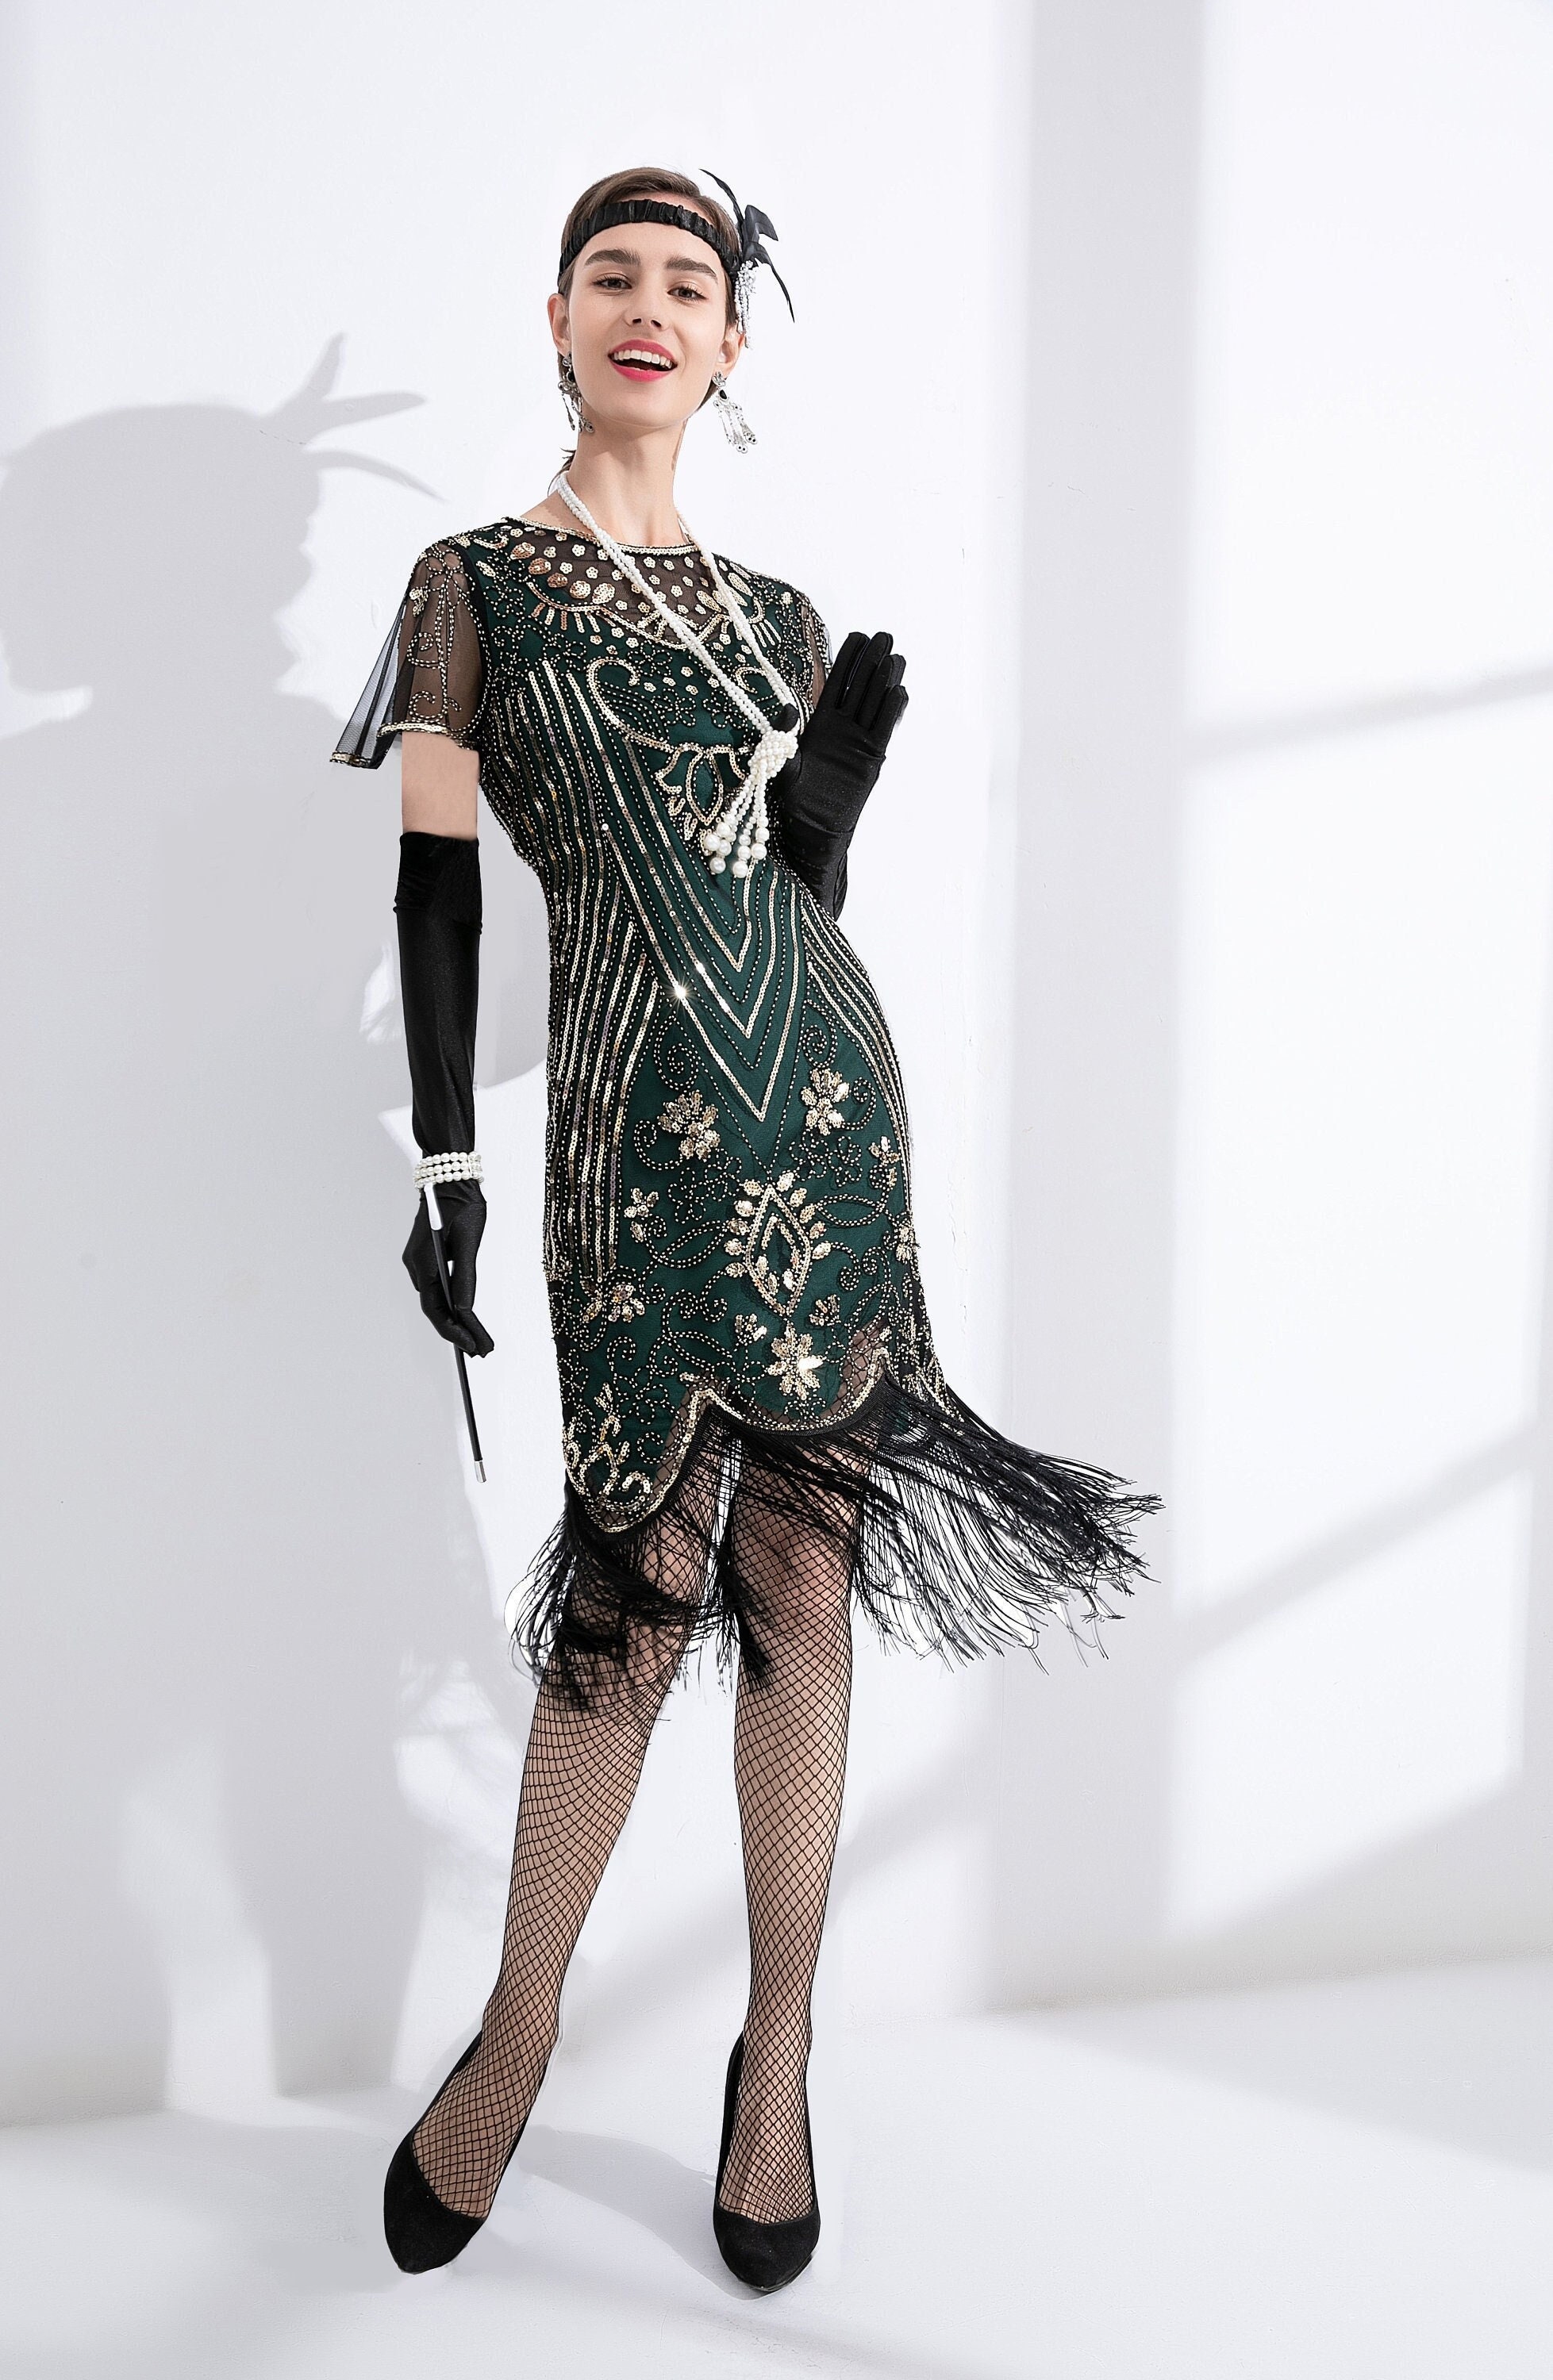 Green 1920s Sequin Art Deco Maxi Dress